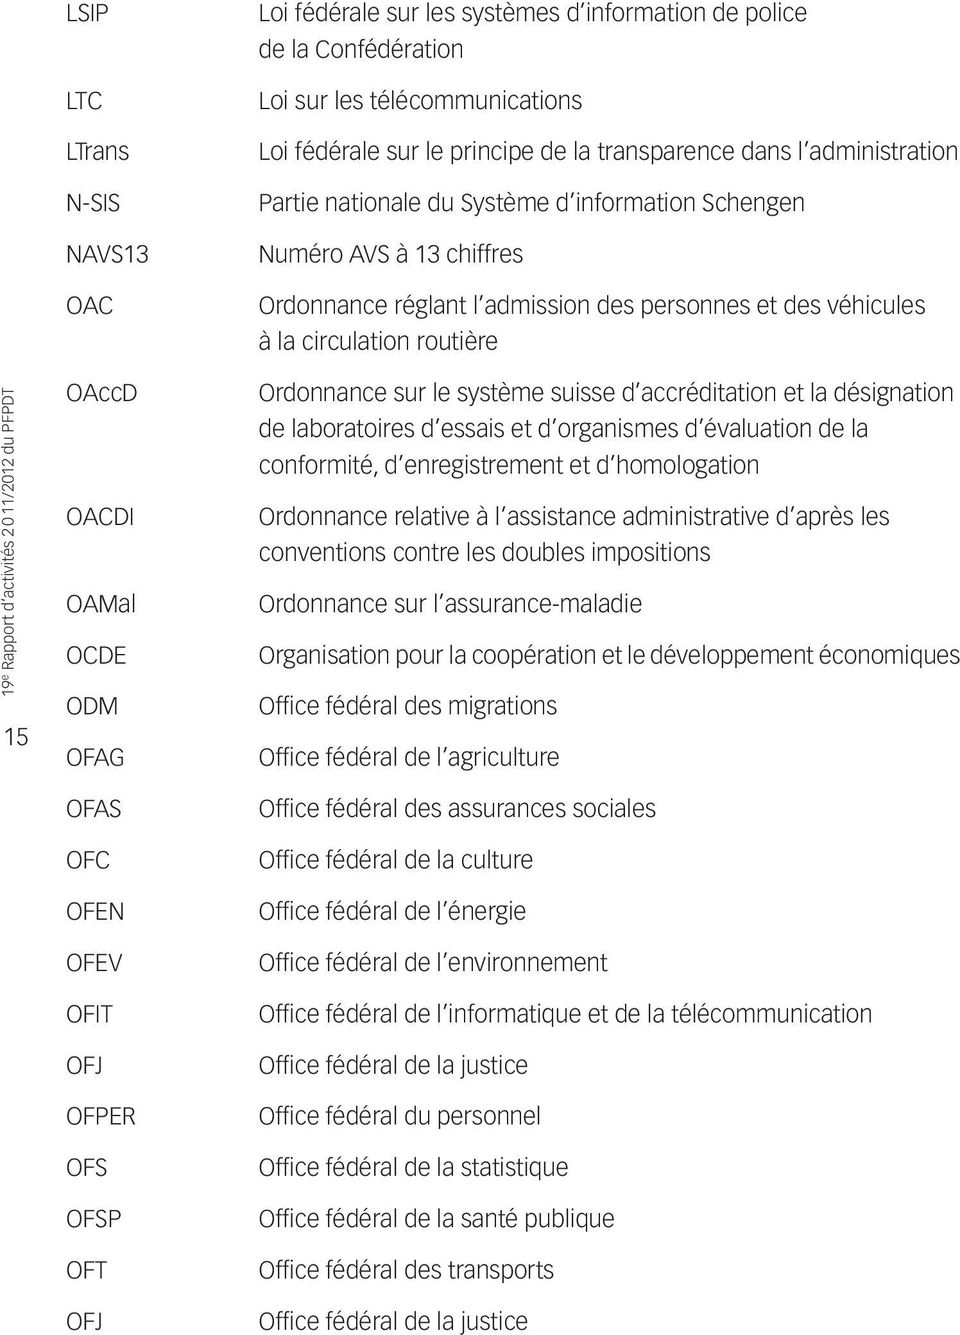 OCDE ODM OFAG Ordonnance sur le système suisse d accréditation et la désignation de laboratoires d essais et d organismes d évaluation de la conformité, d enregistrement et d homologation Ordonnance